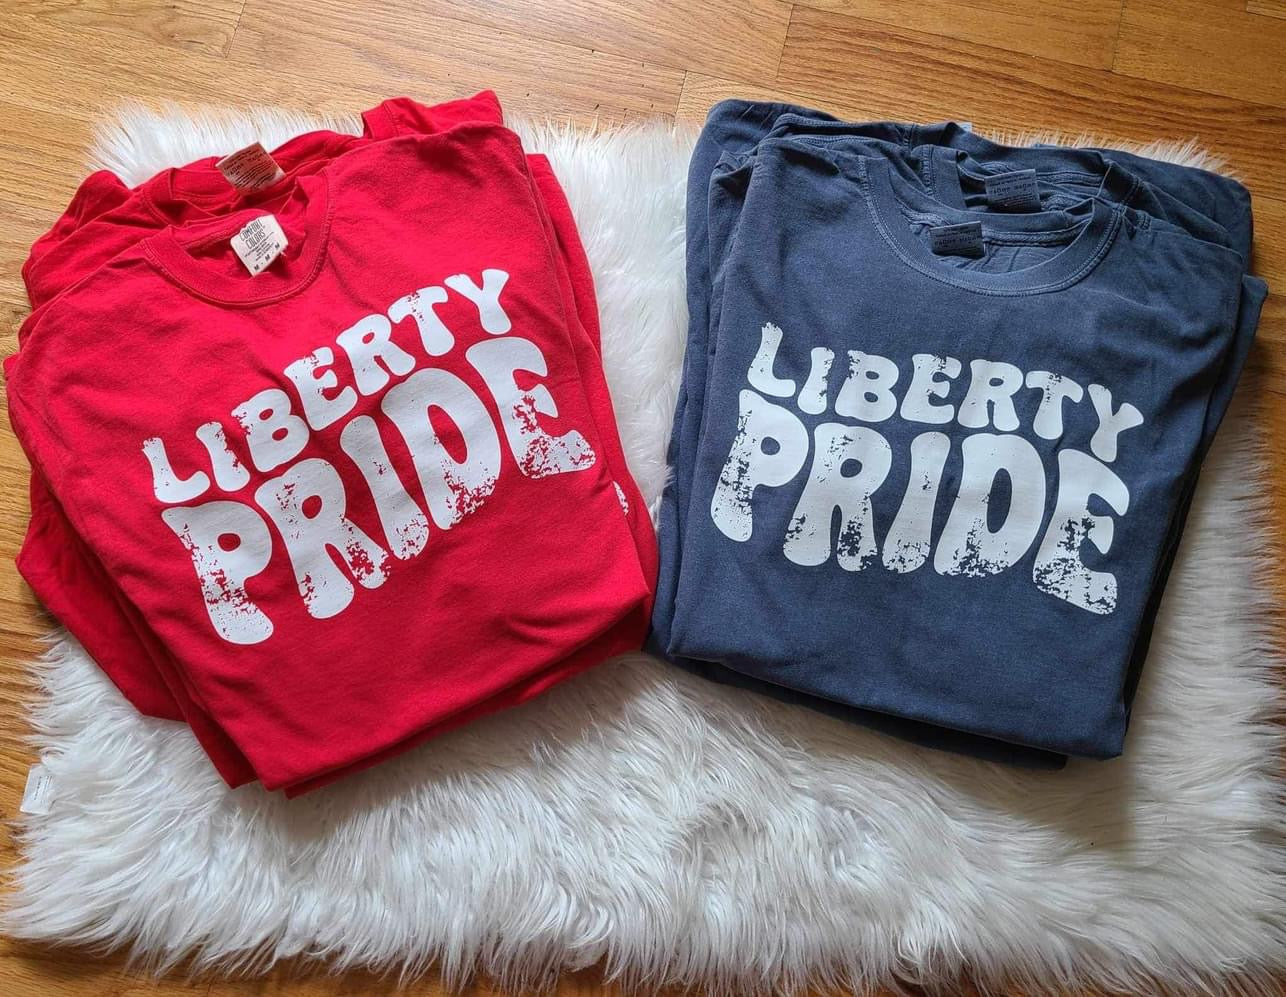 Liberty Pride